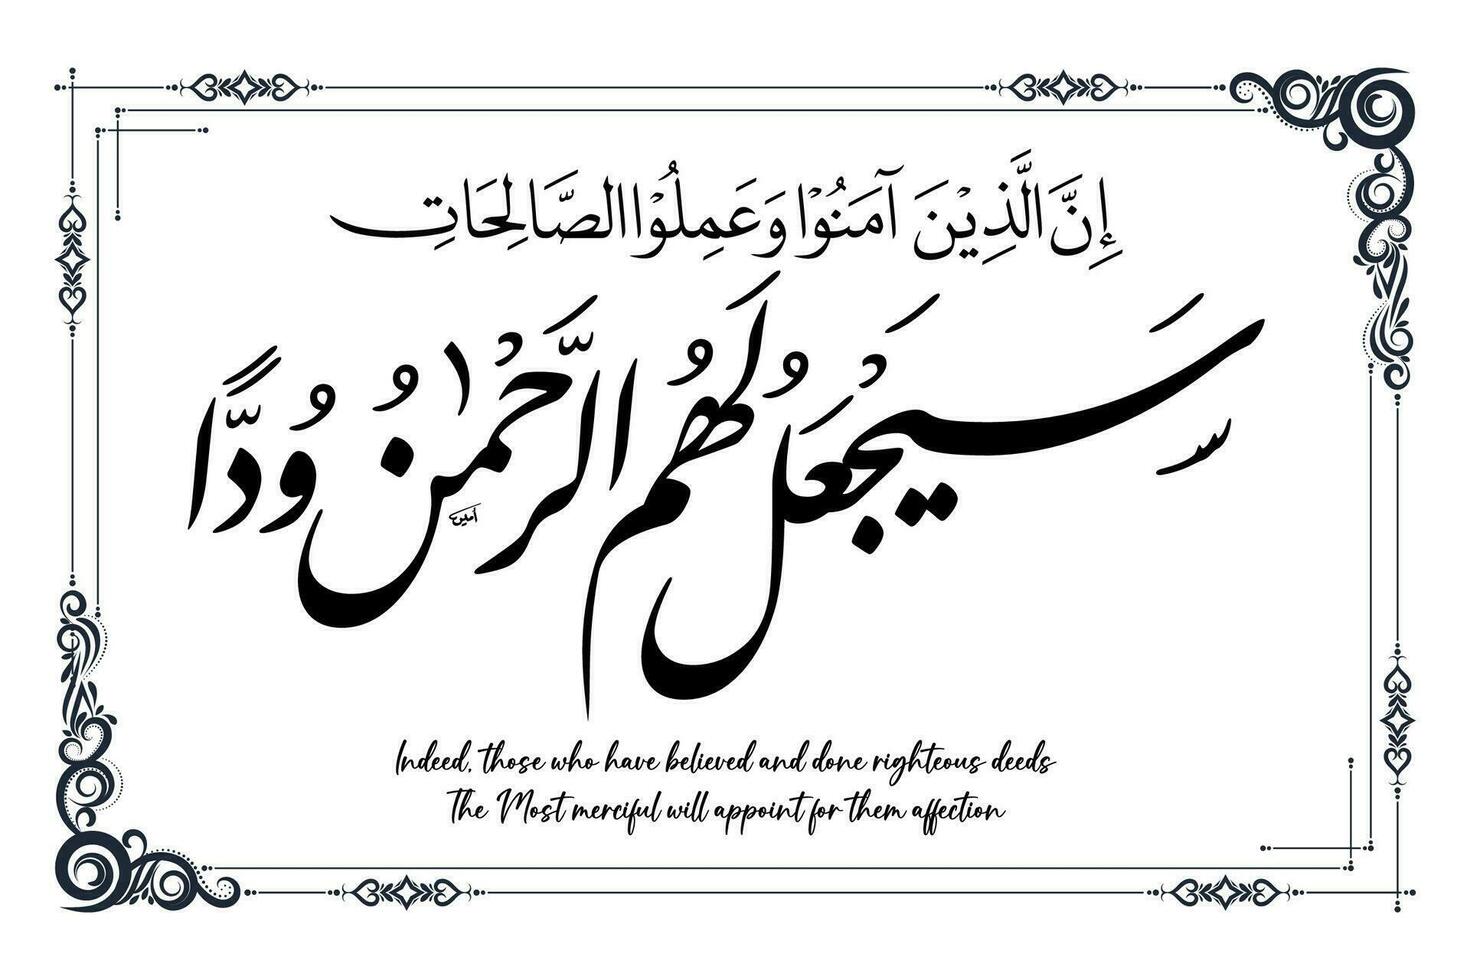 islámico caligrafía cuales medio, en efecto, esos quien tener creyó y hecho justo andanzas el más misericordioso será nombrar para ellos afecto vector